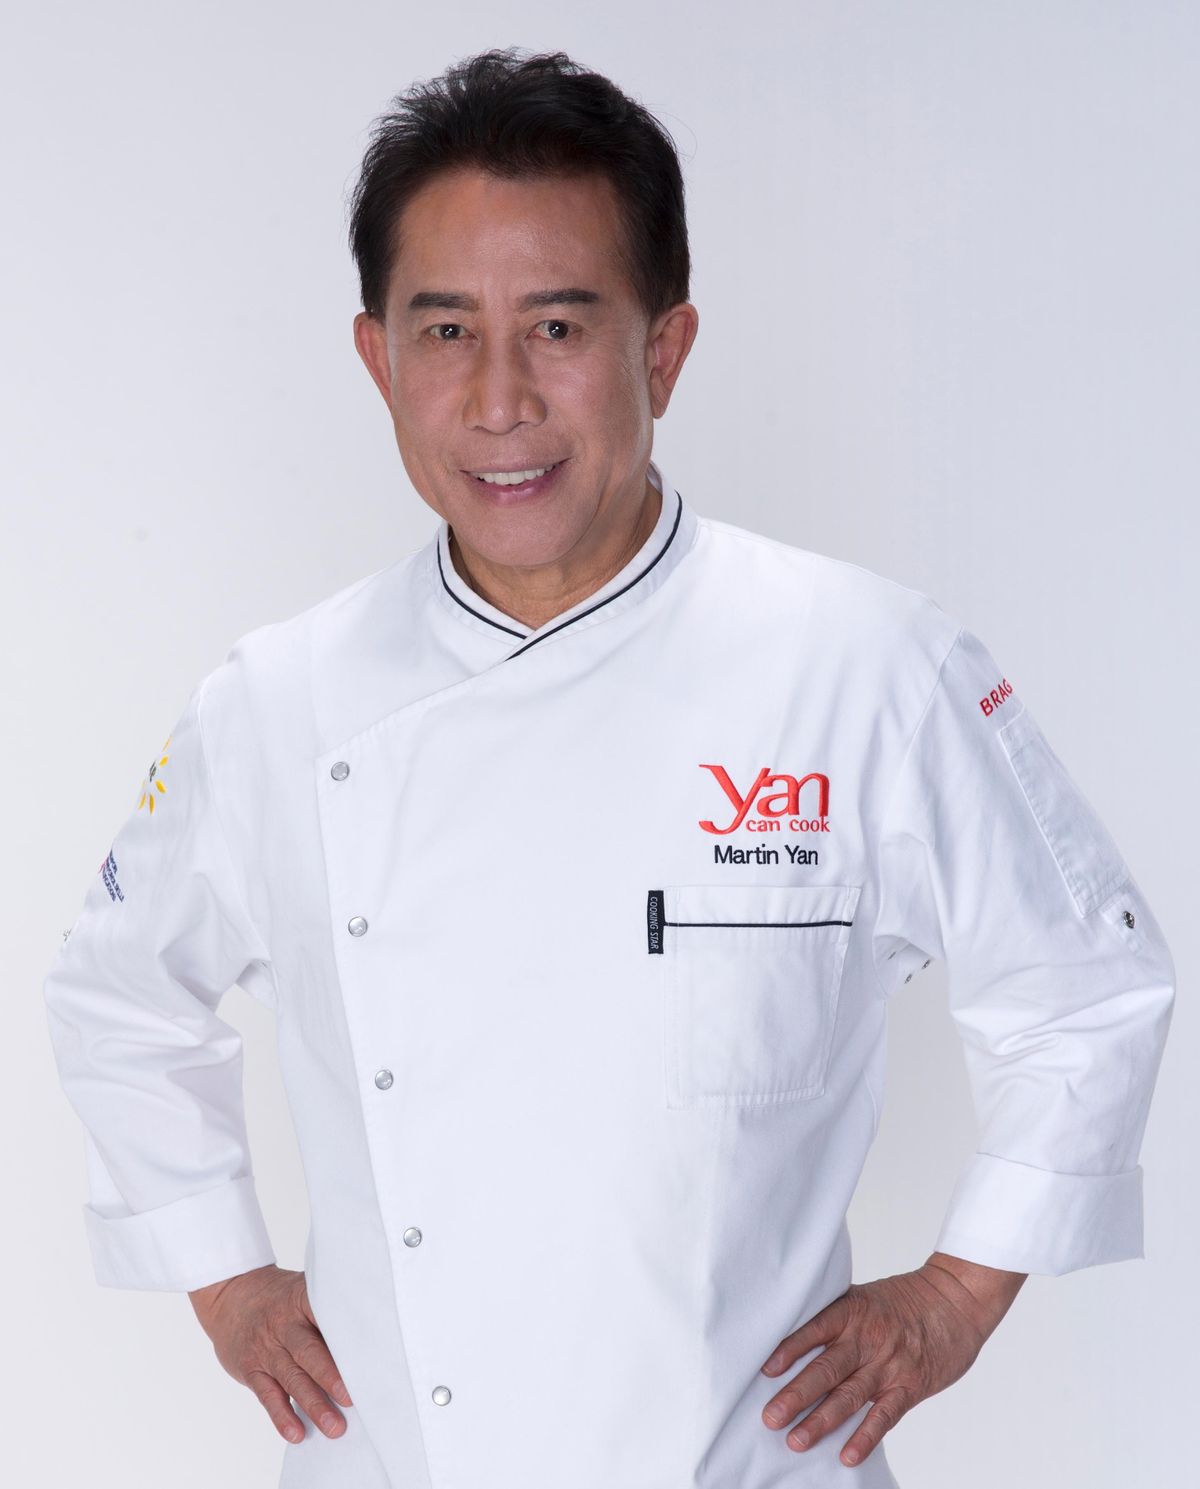 NEA Big Read Finale with Chef Martin Yan